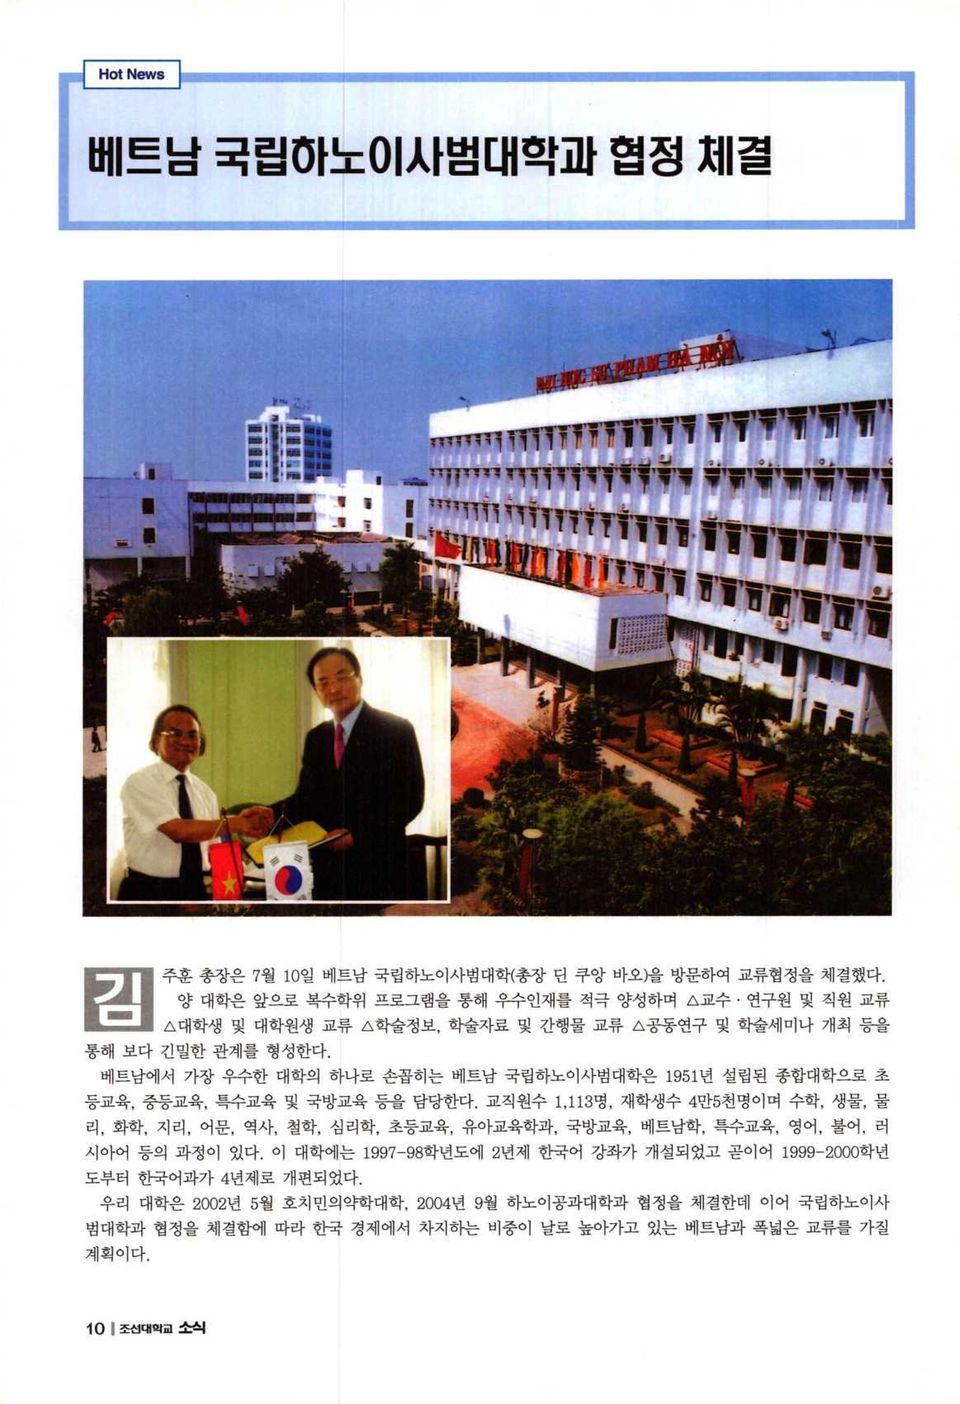 베트남에서 가장 우수한 대학의 하나로 손꼽히는 베트남 국립하노이사범대학은 1951년 설립된 종합대학으로 초 등교육, 중등교육, 특수교육 및 국방교육 등을 담당한다.